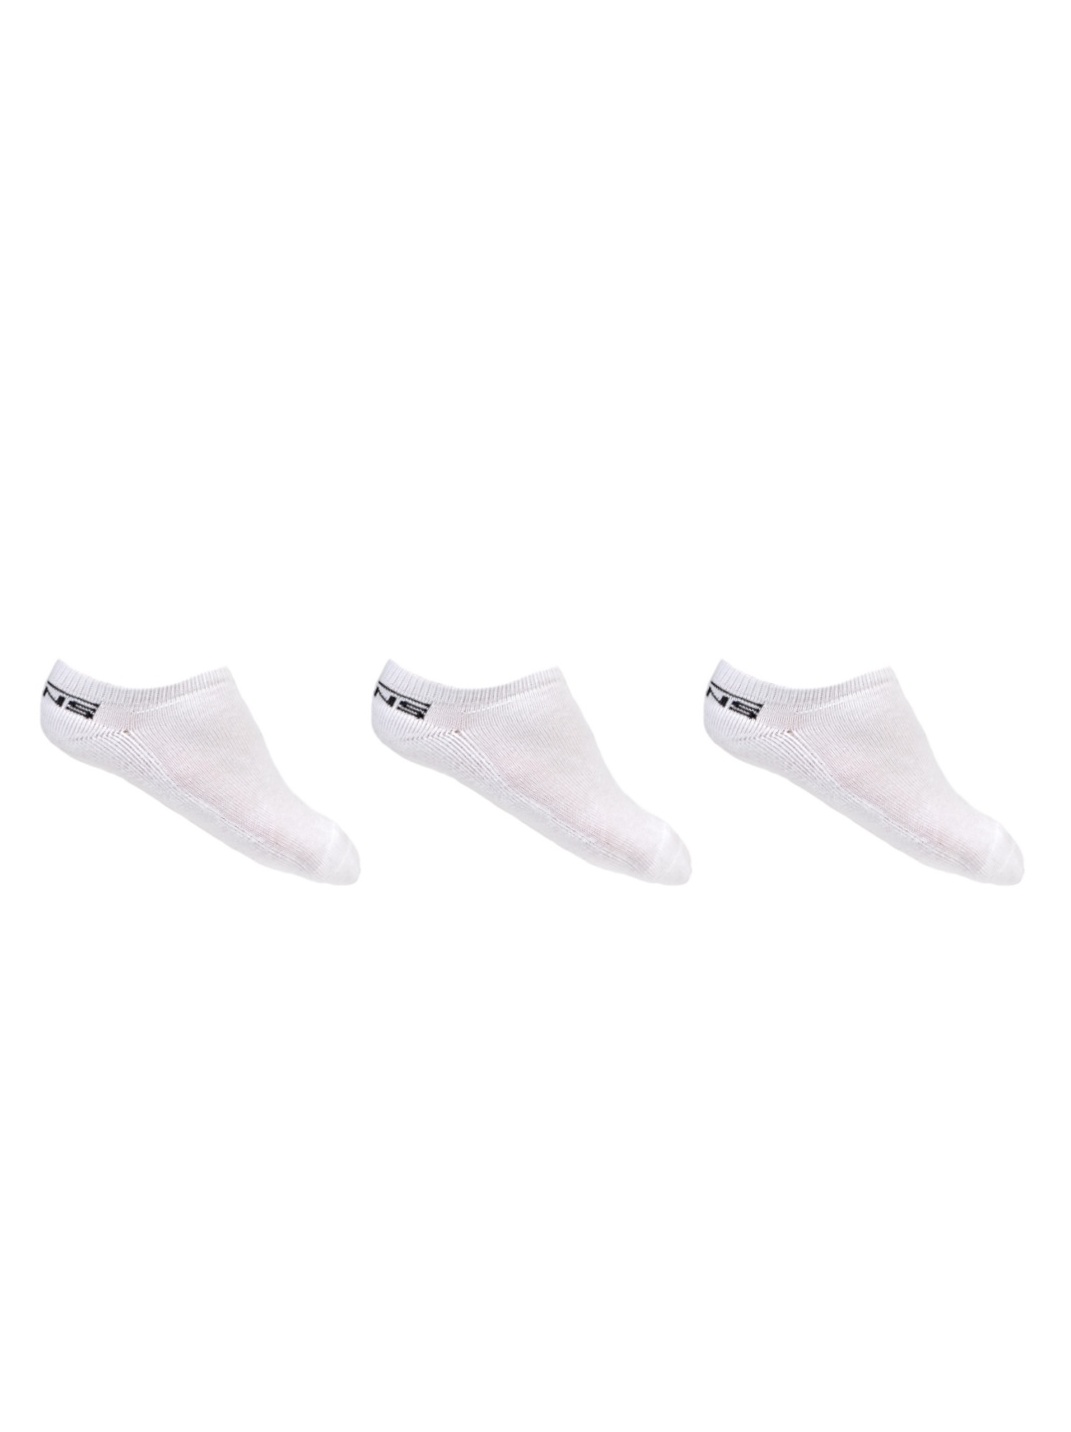 Vans CLASSIC LOW 3PK white kotníkové ponožky - 7-9 bílá